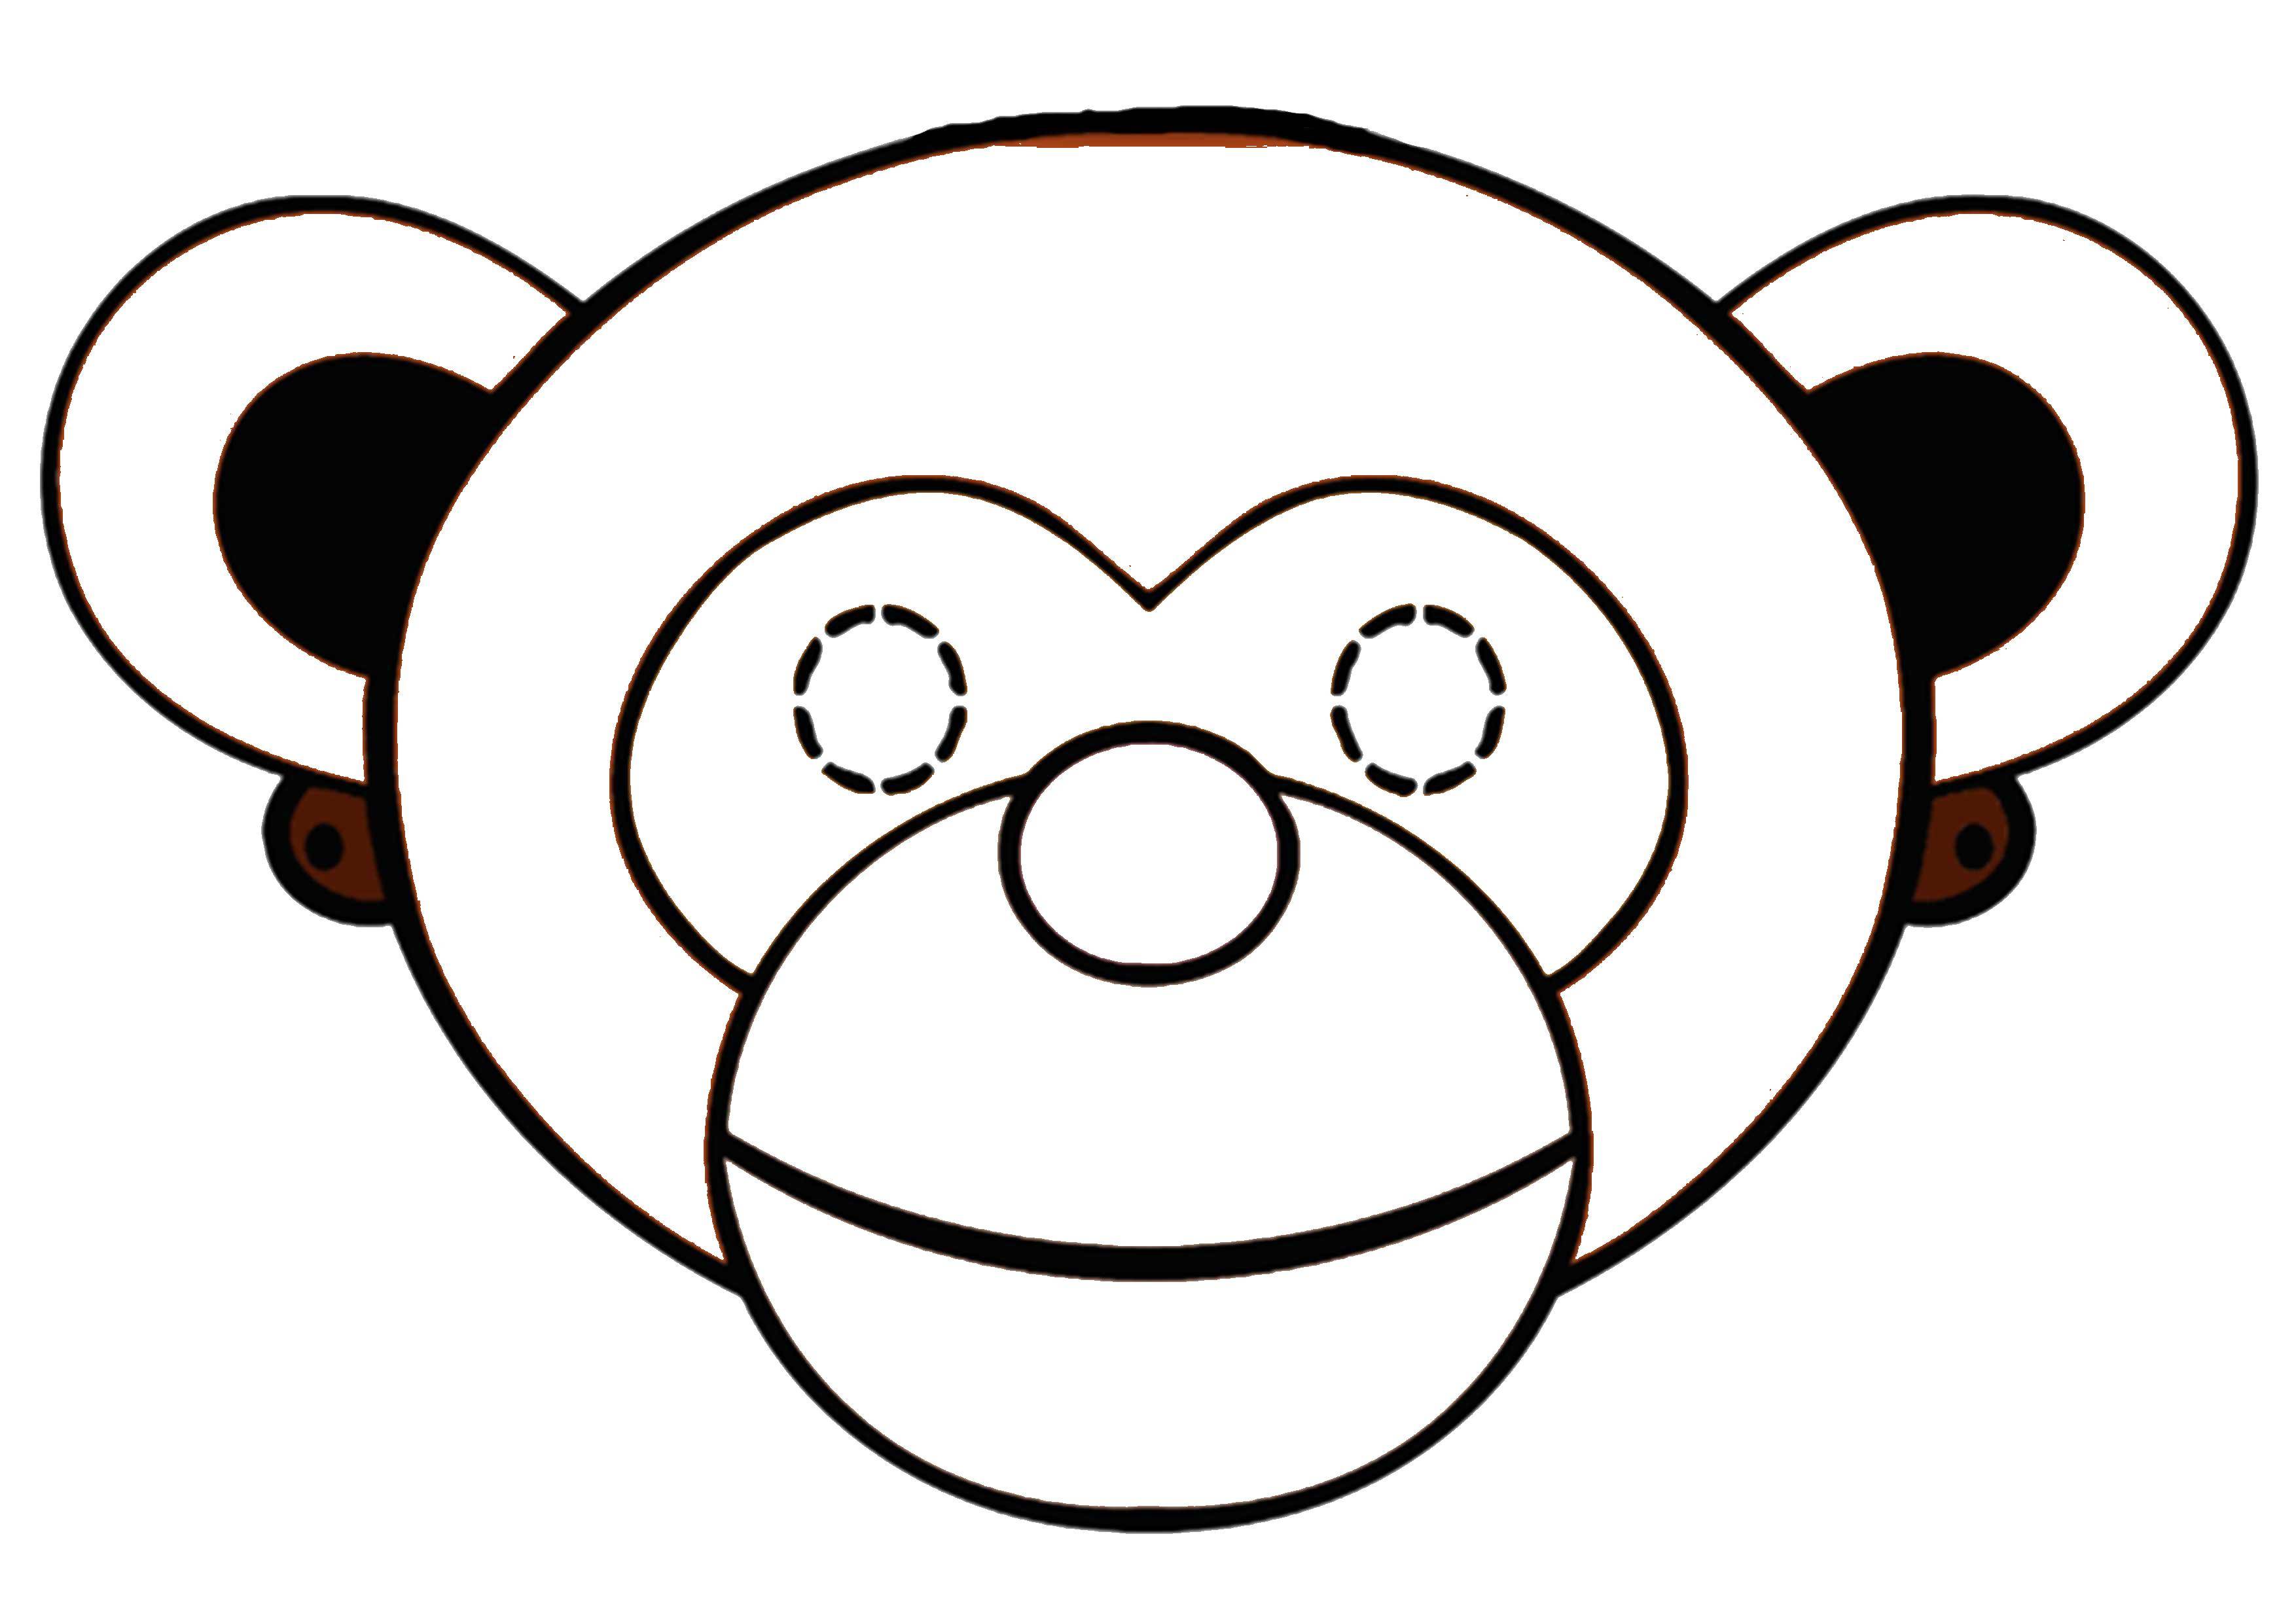 Coloring Mask monkey. Category Masks . Tags:  mask, monkey.